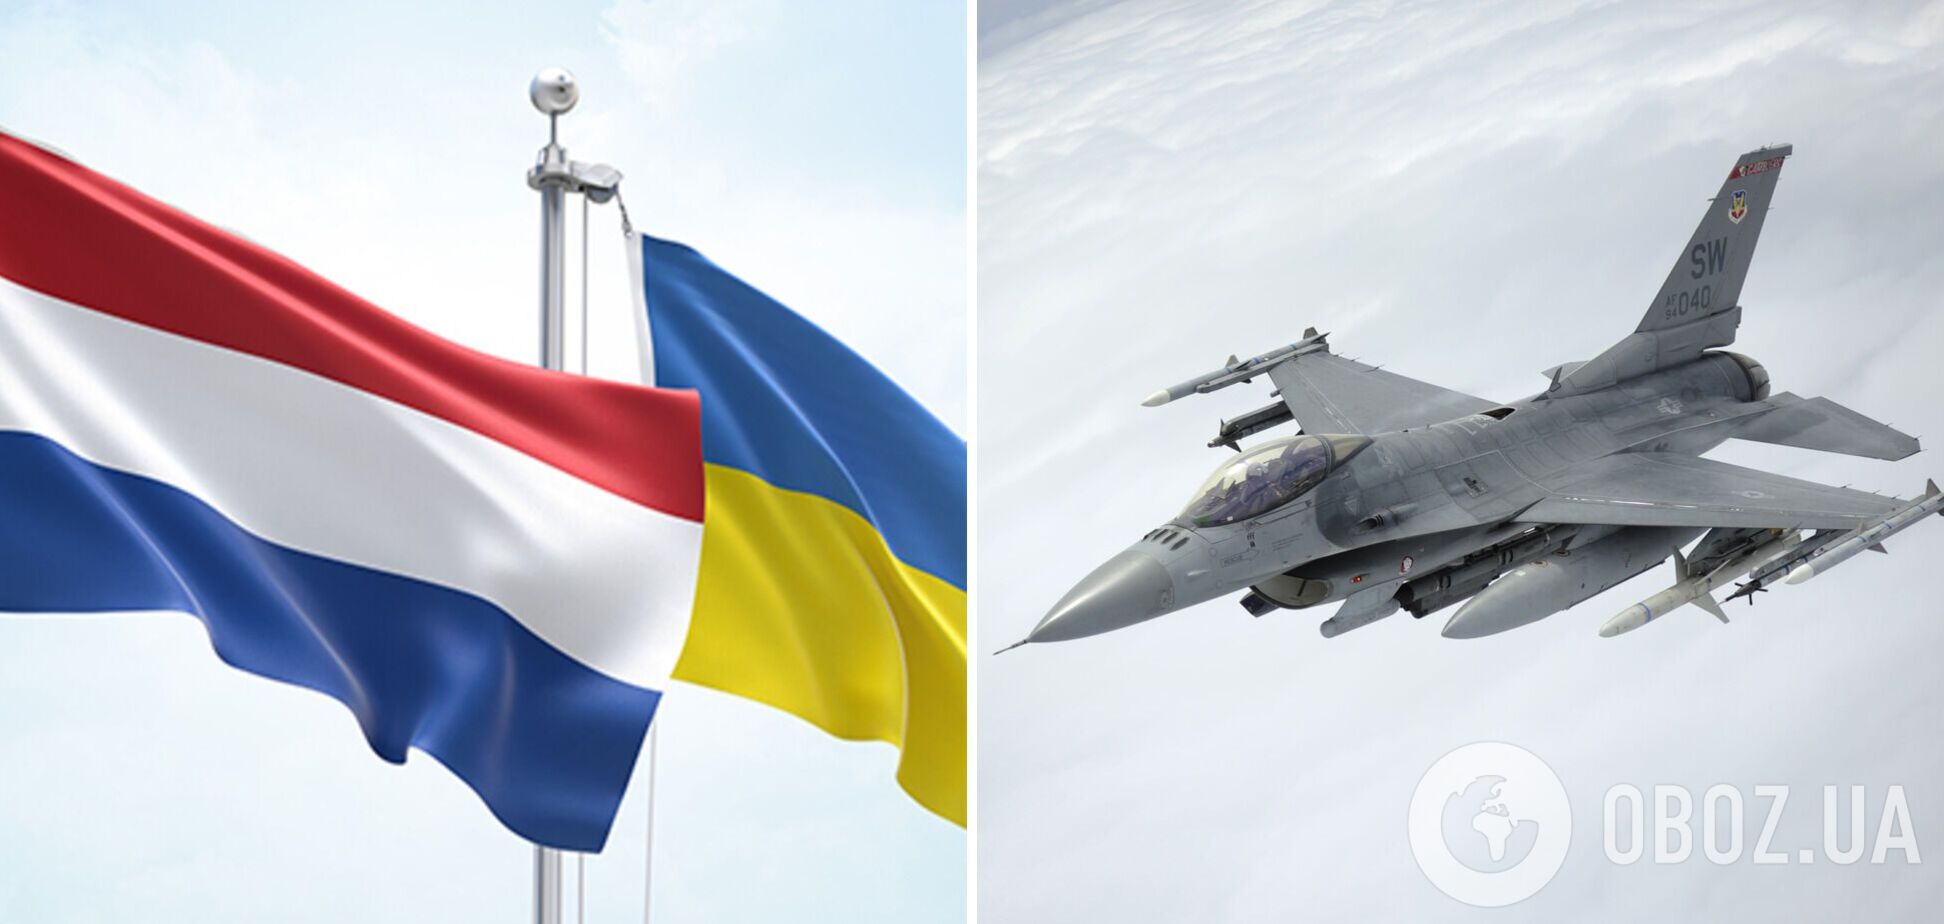 Нидерланды могут предоставить Украине истребители F-16 после обучения пилотов – Bloomberg